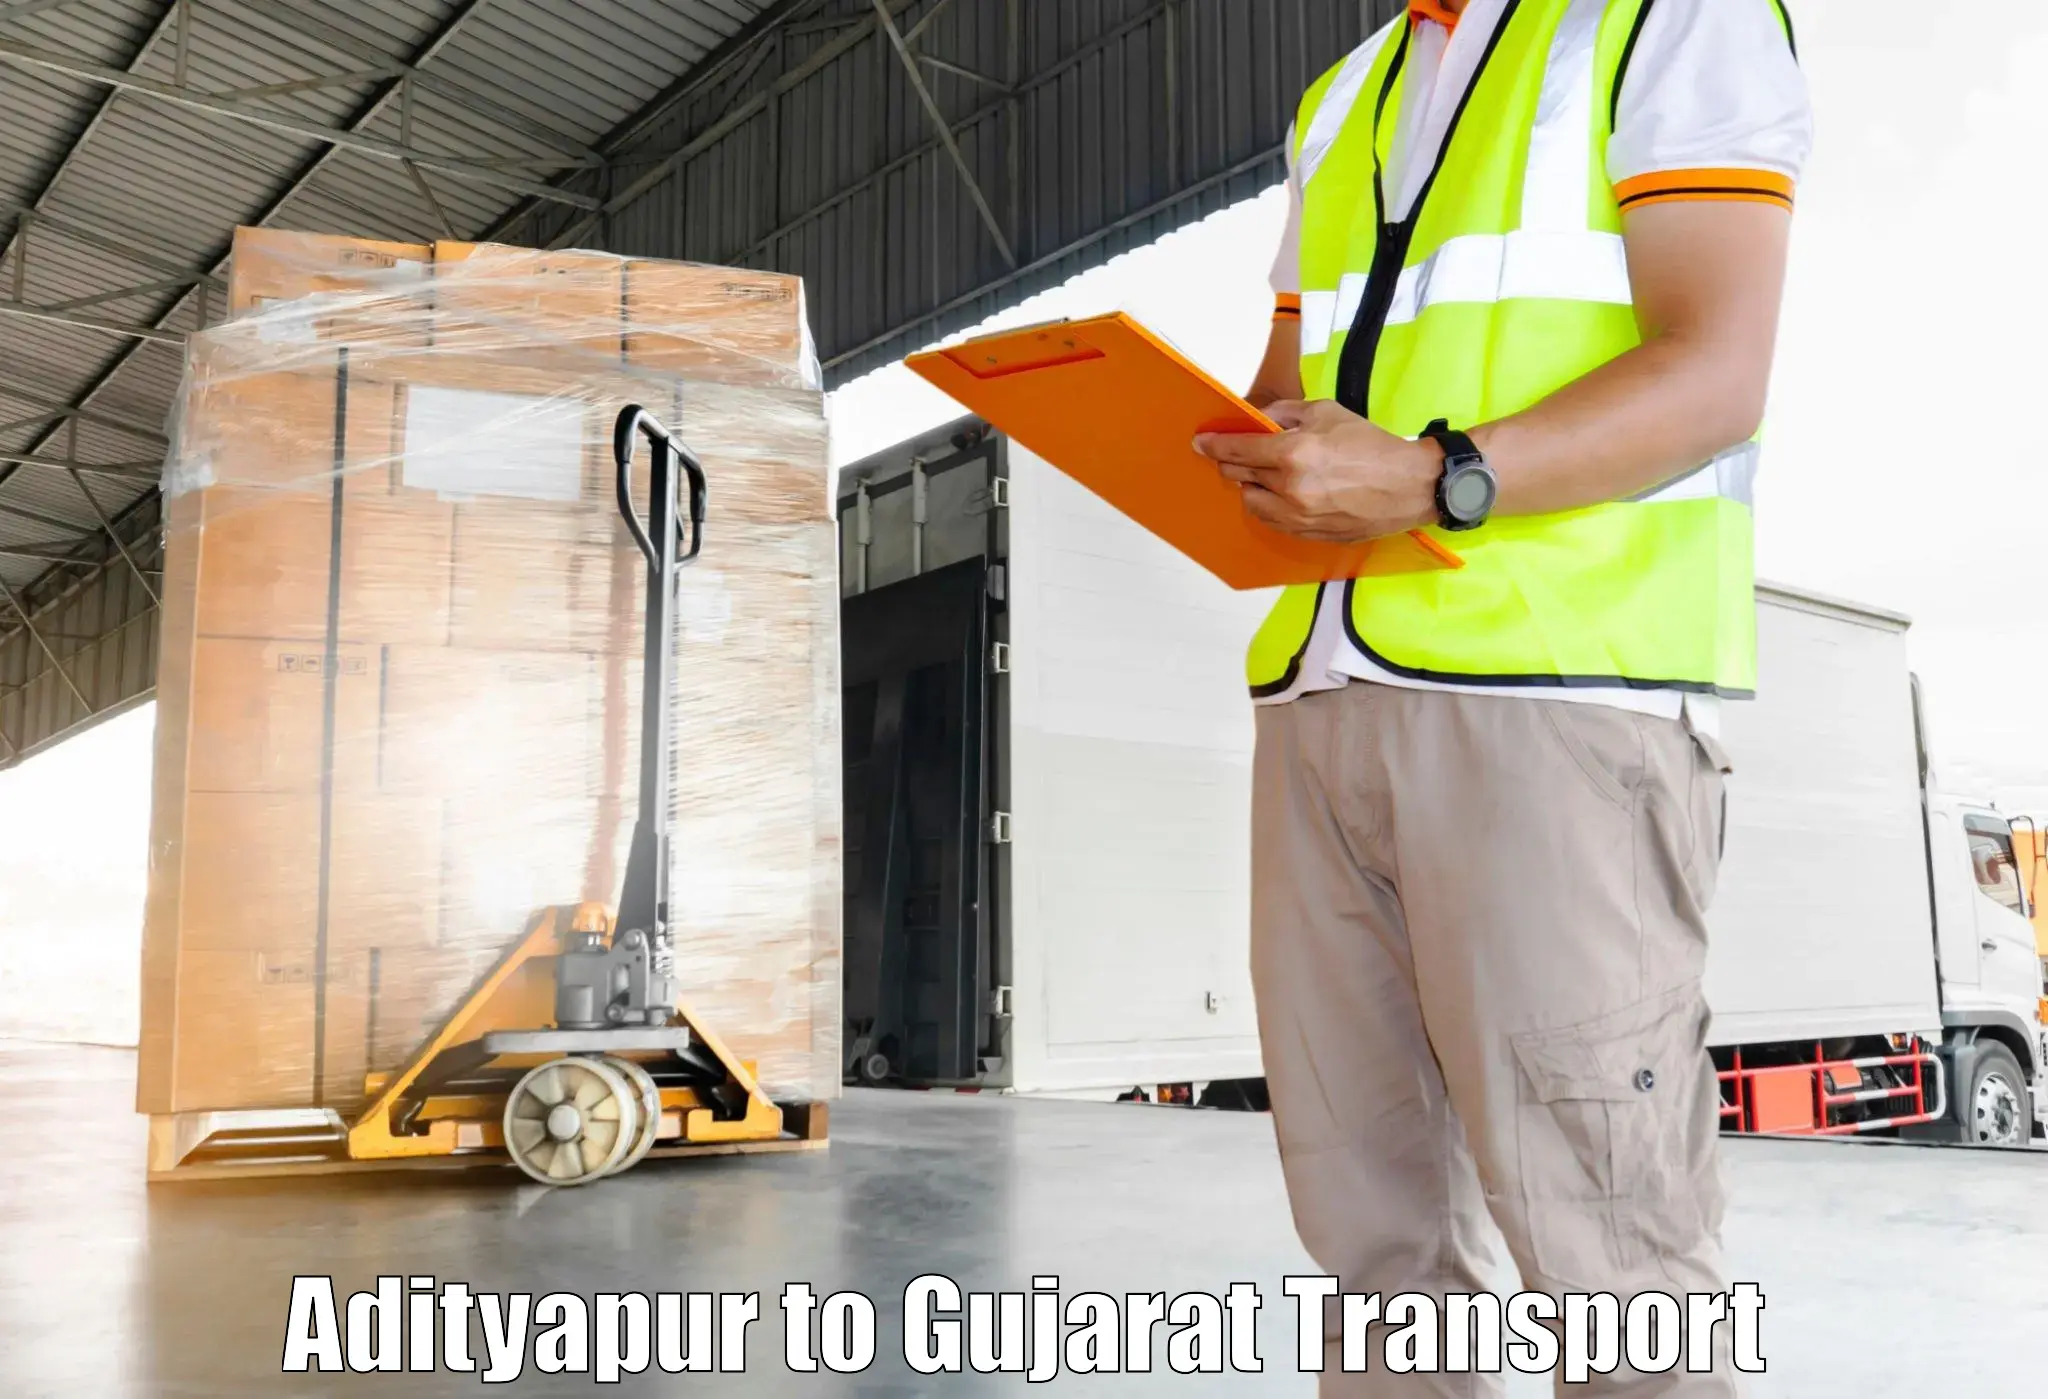 Delivery service Adityapur to Narmada Gujarat